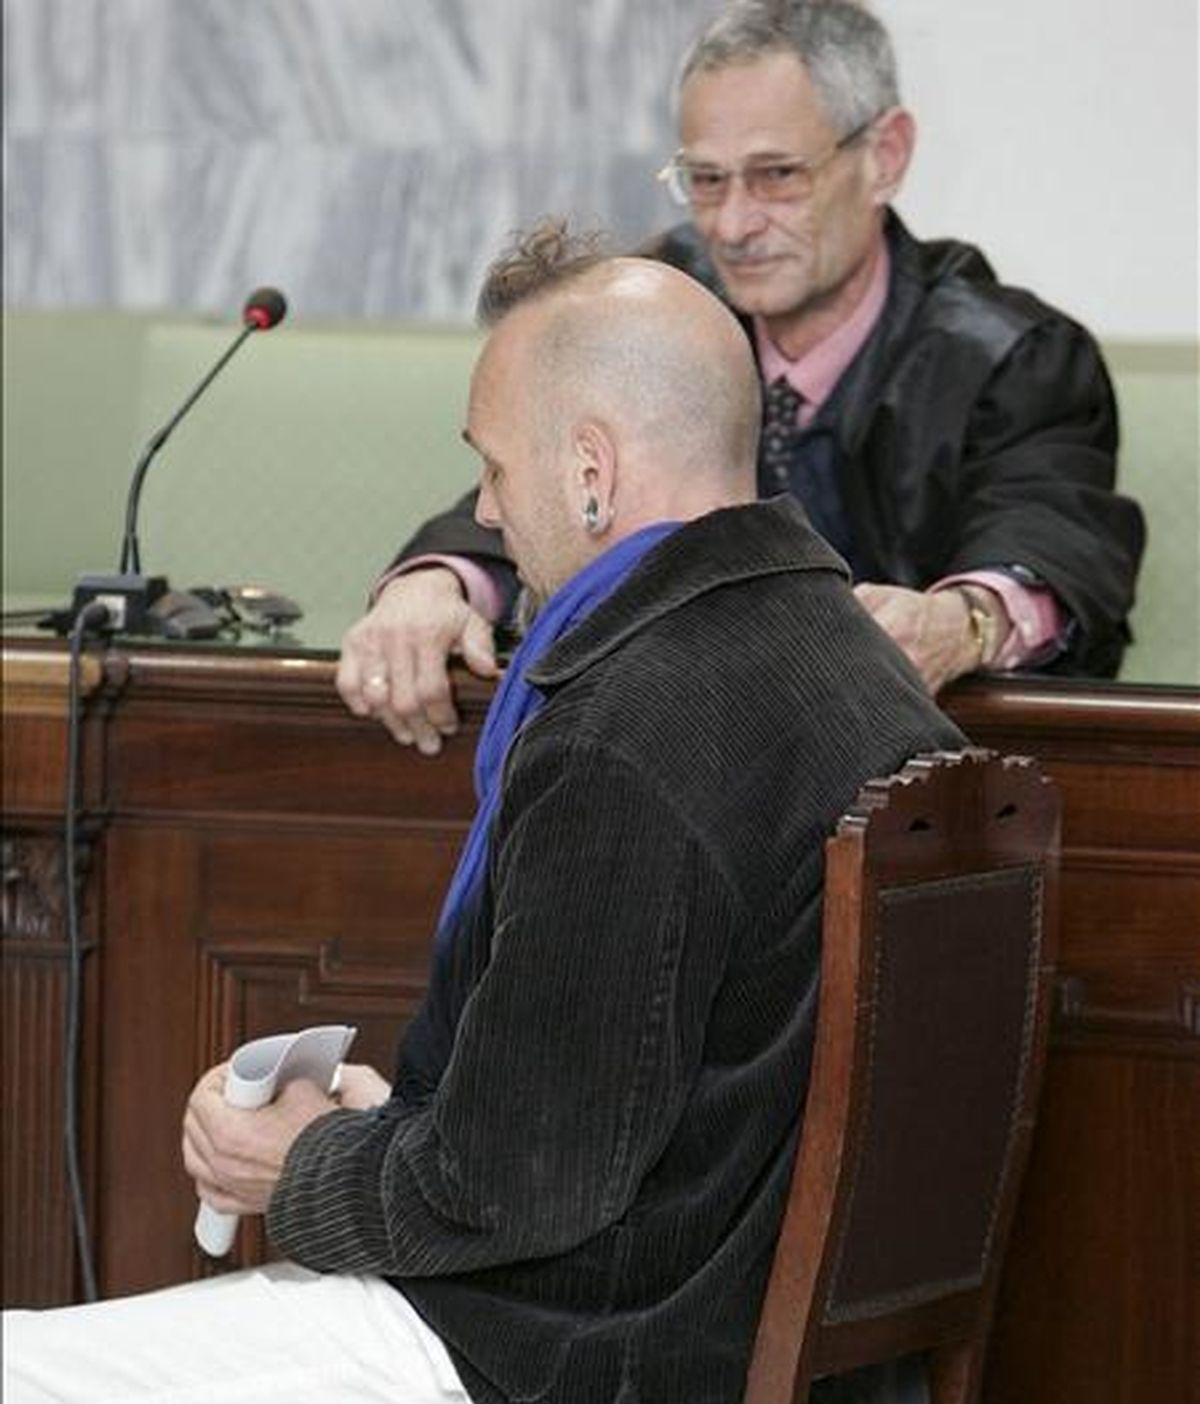 El grancanario Juan Carmelo Santana, de 42 años, durante el juicio en la Audiencia Provincial de Las Palmas. EFE/Archivo